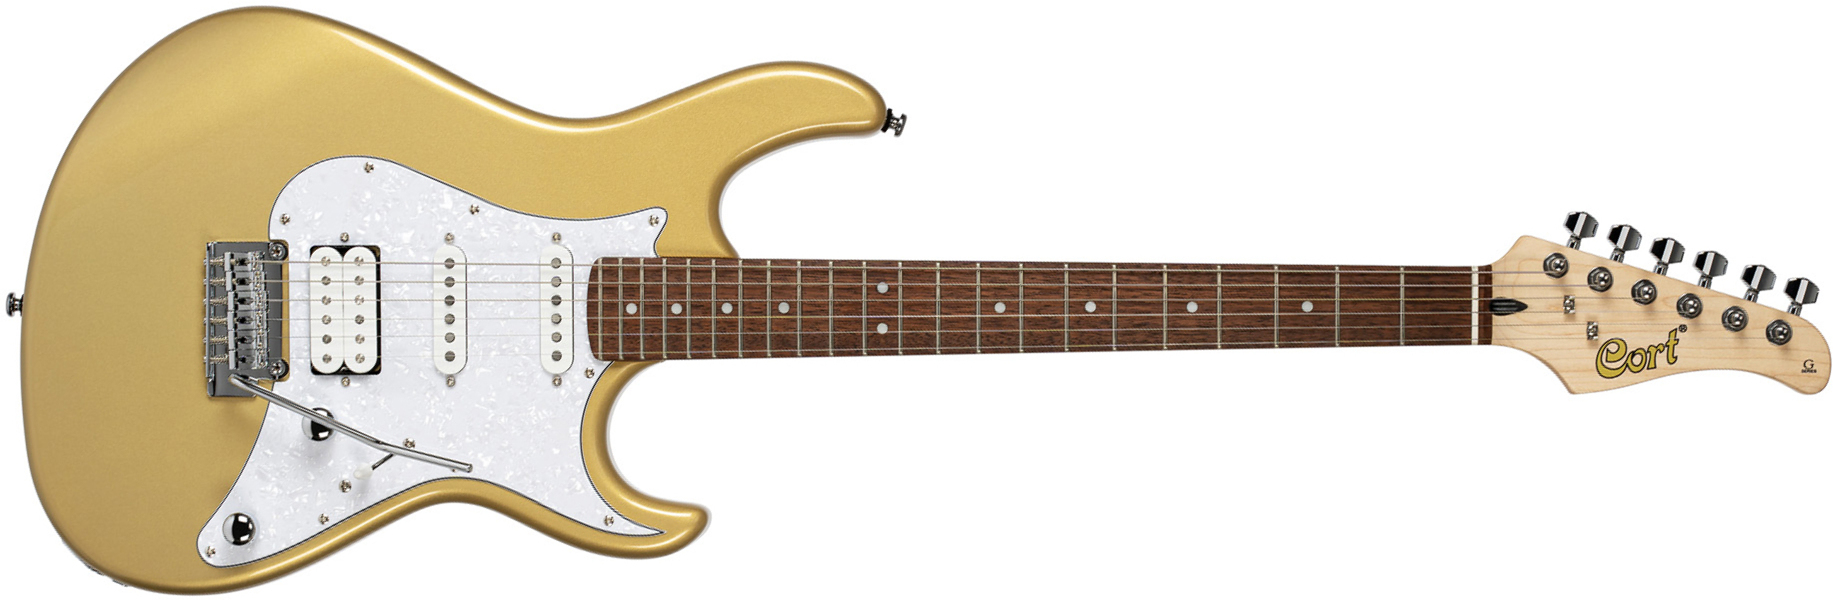 Cort G250 Svm Hss Trem Jat - Champagne Gold Metallic - Elektrische gitaar in Str-vorm - Main picture